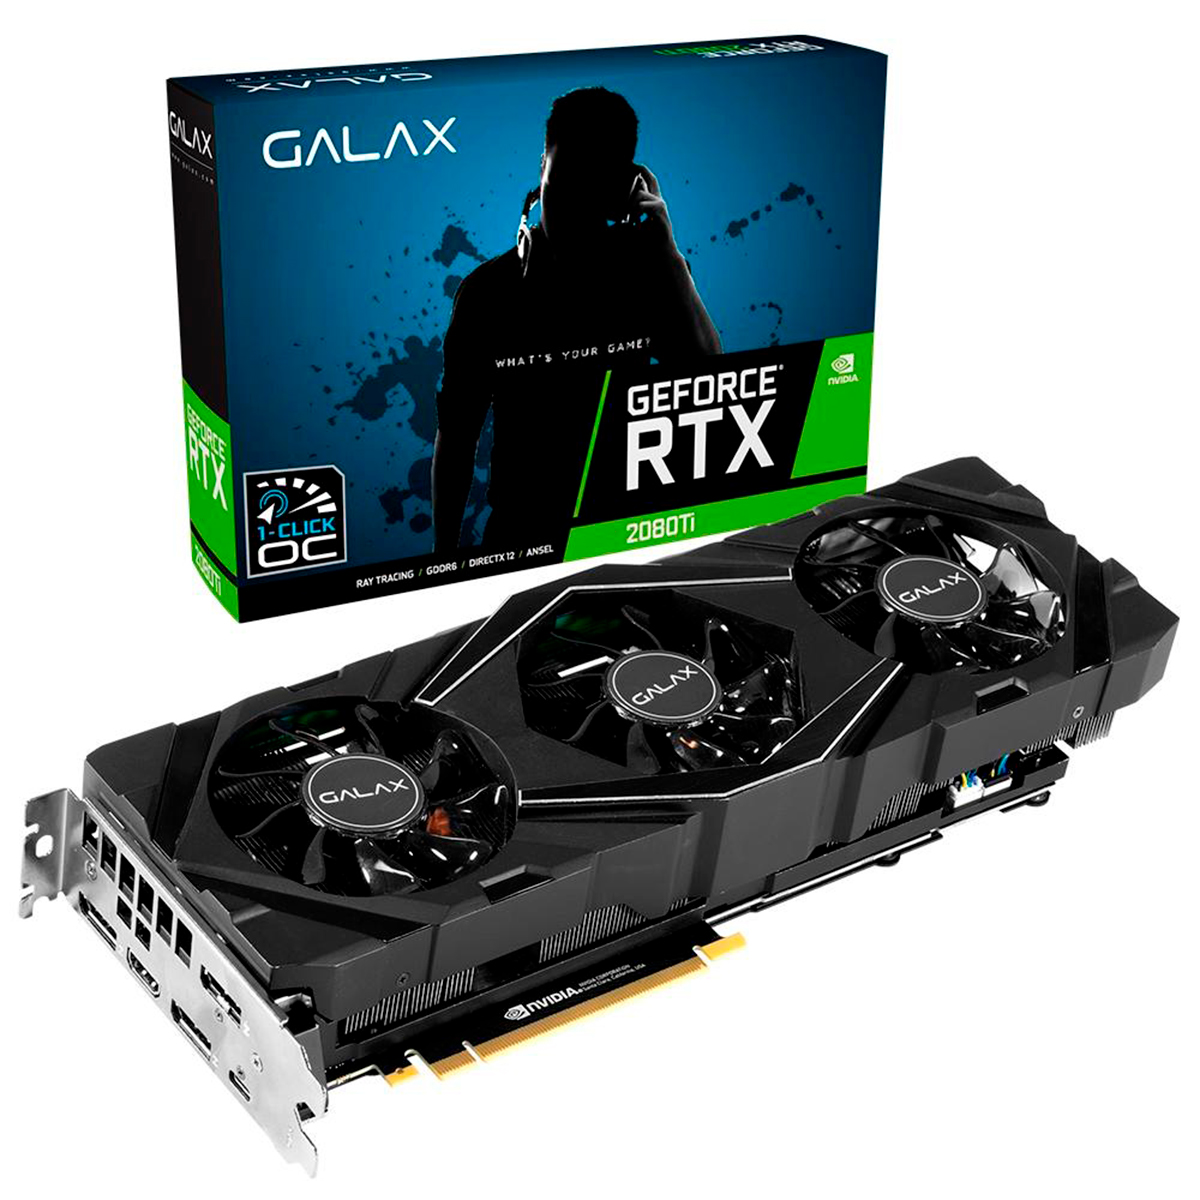 GeForce RTX 2080 Ti 11GB GDDR6 352bits - 1-Click OC - SG Edition - Galax 28IULBUCT2CK